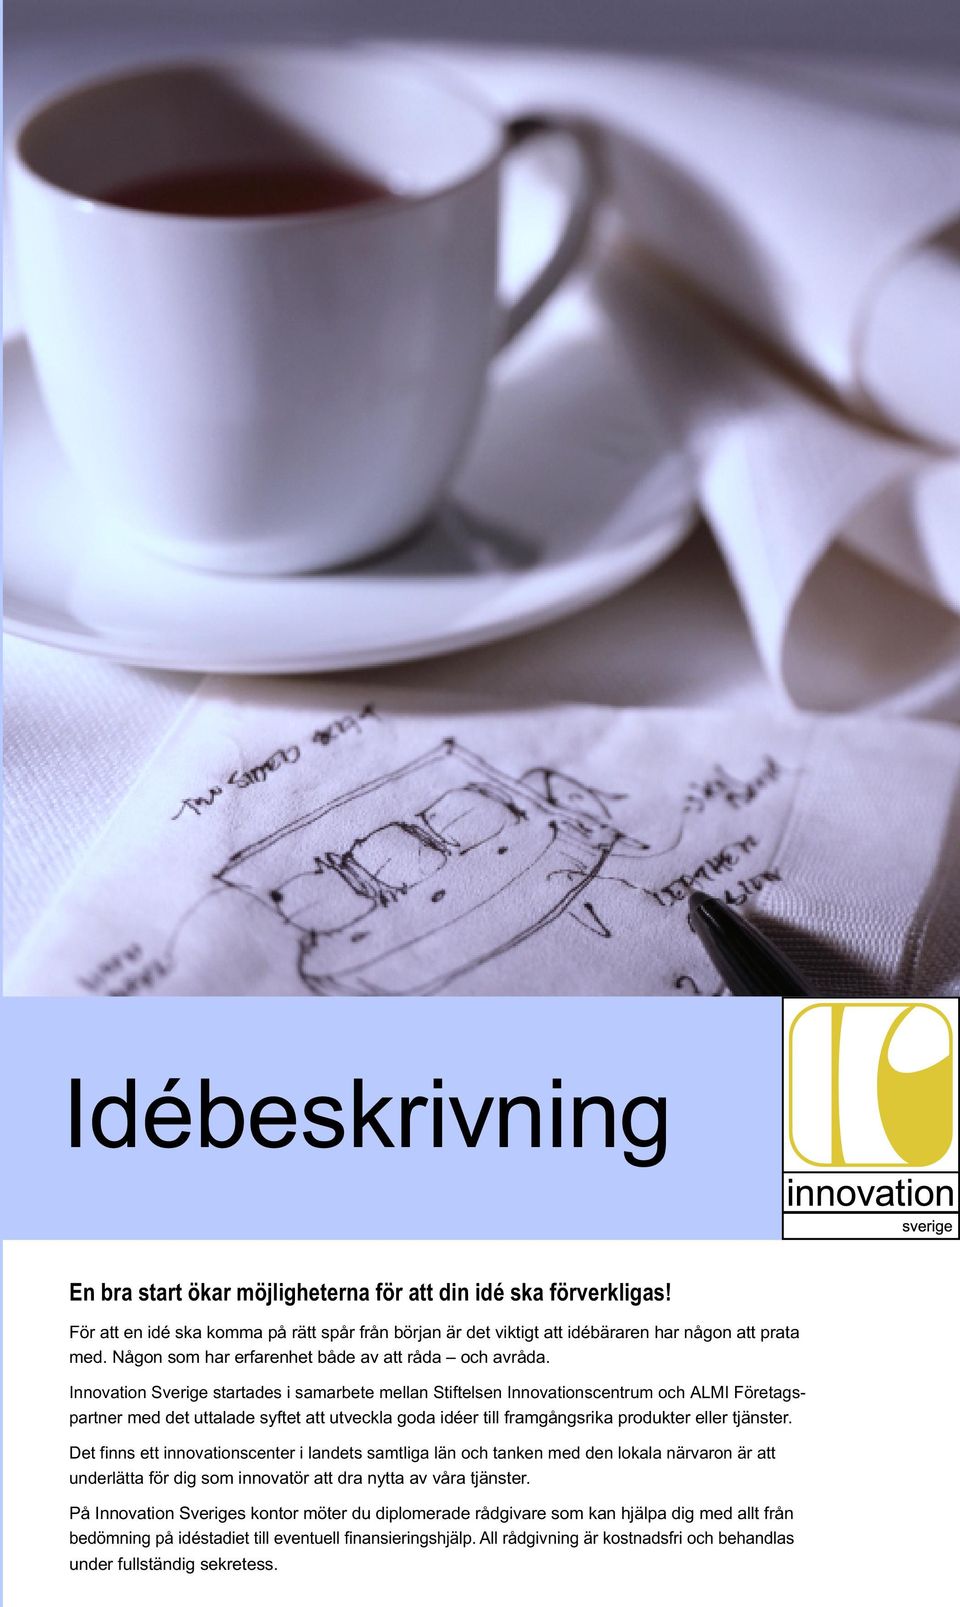 Innovation Sverige startades i samarbete mellan Stiftelsen Innovationscentrum och ALMI Företagspartner med det uttalade syftet att utveckla goda idéer till framgångsrika produkter eller tjänster.